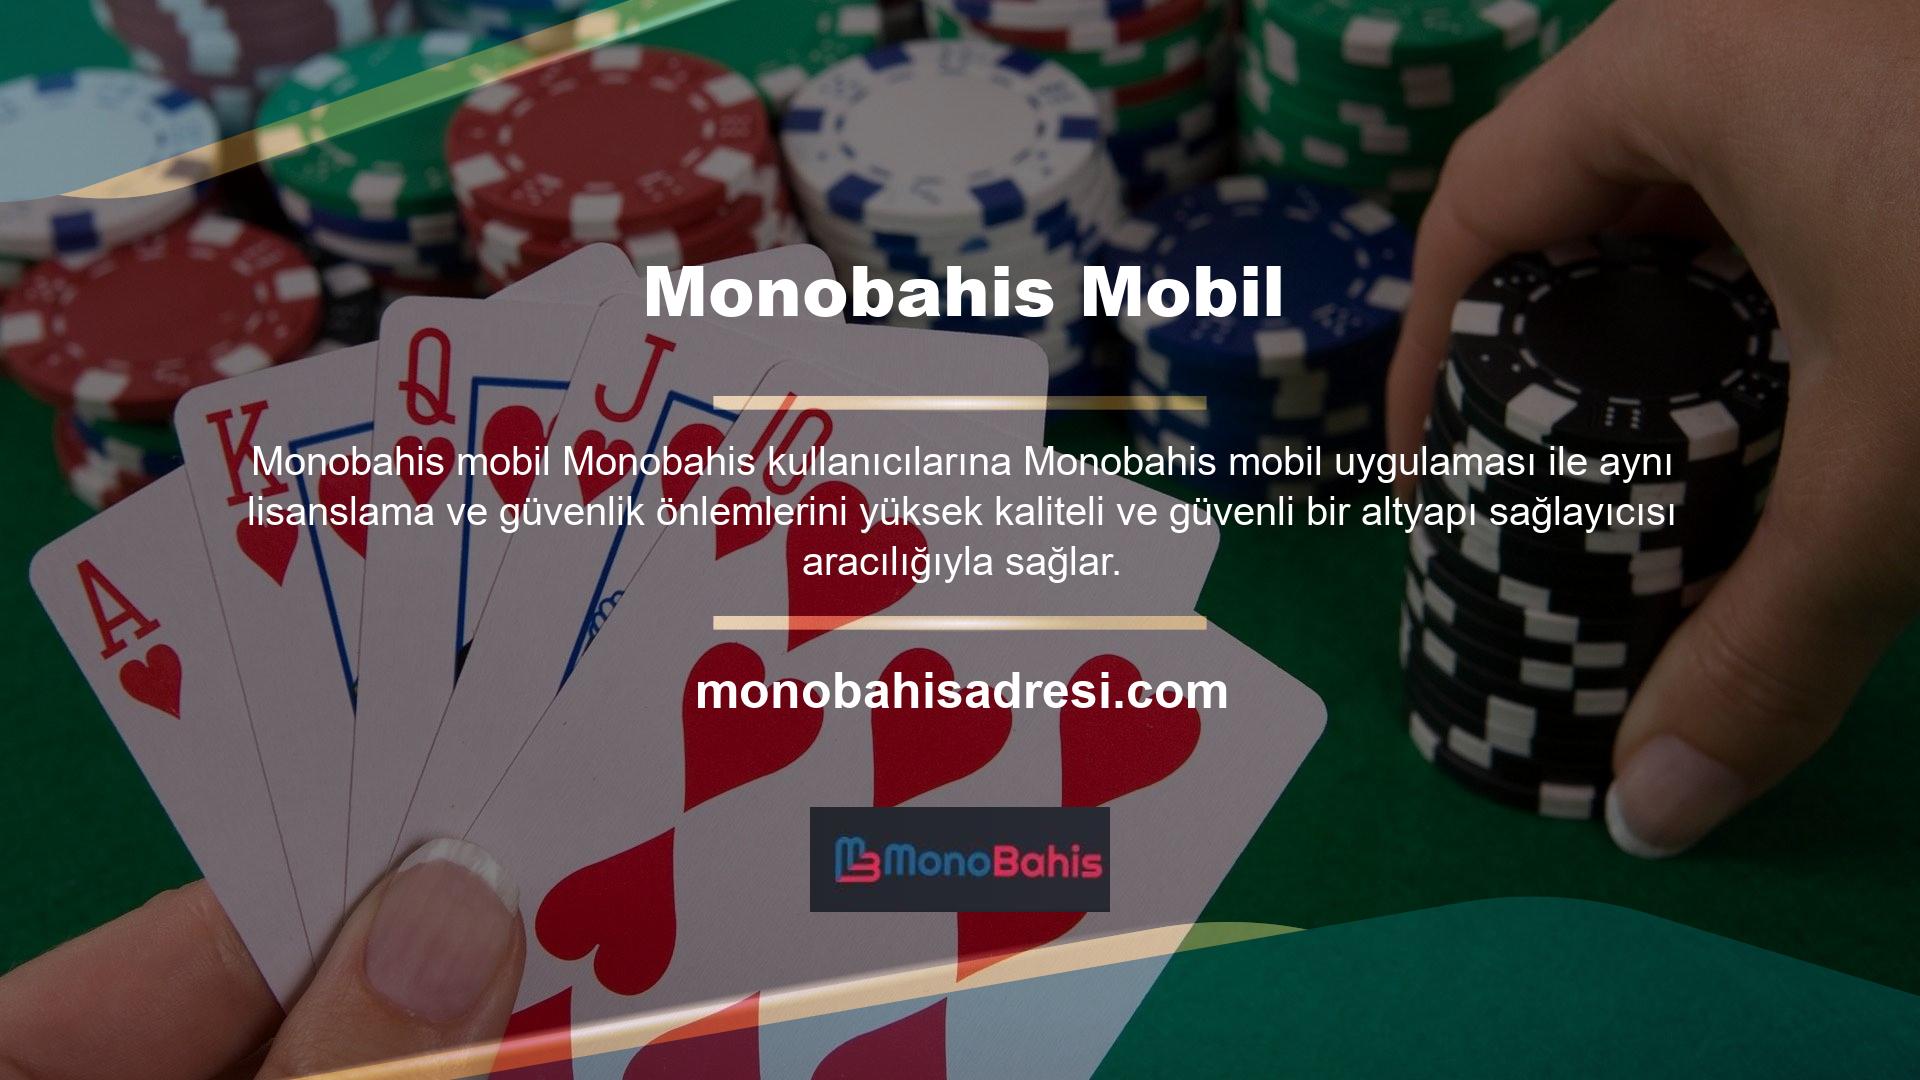 Monobahis online bahis sitesi sahip olduğu lisanslar, mükemmel altyapı sağlayıcısı ve Monobahis Mobile'ın mobil uyumlu sitesi sayesinde oldukça güvenilir bir bahis sitesidir